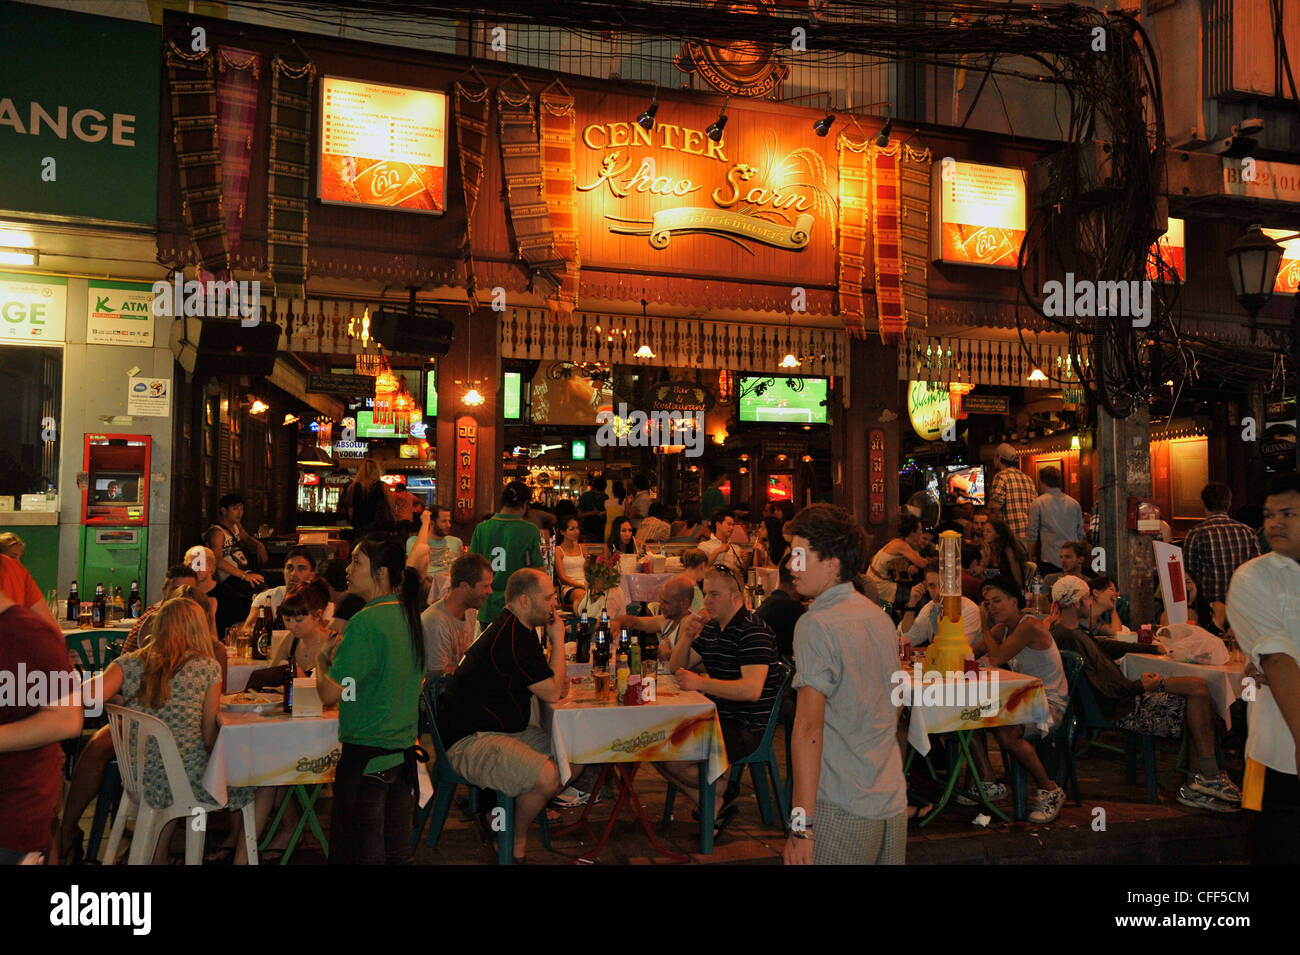 Turista nella parte anteriore del ristorante, seduti ai tavoli, Khao San Road Banglampoo, Bangkok, Thailandia, Asia Foto Stock